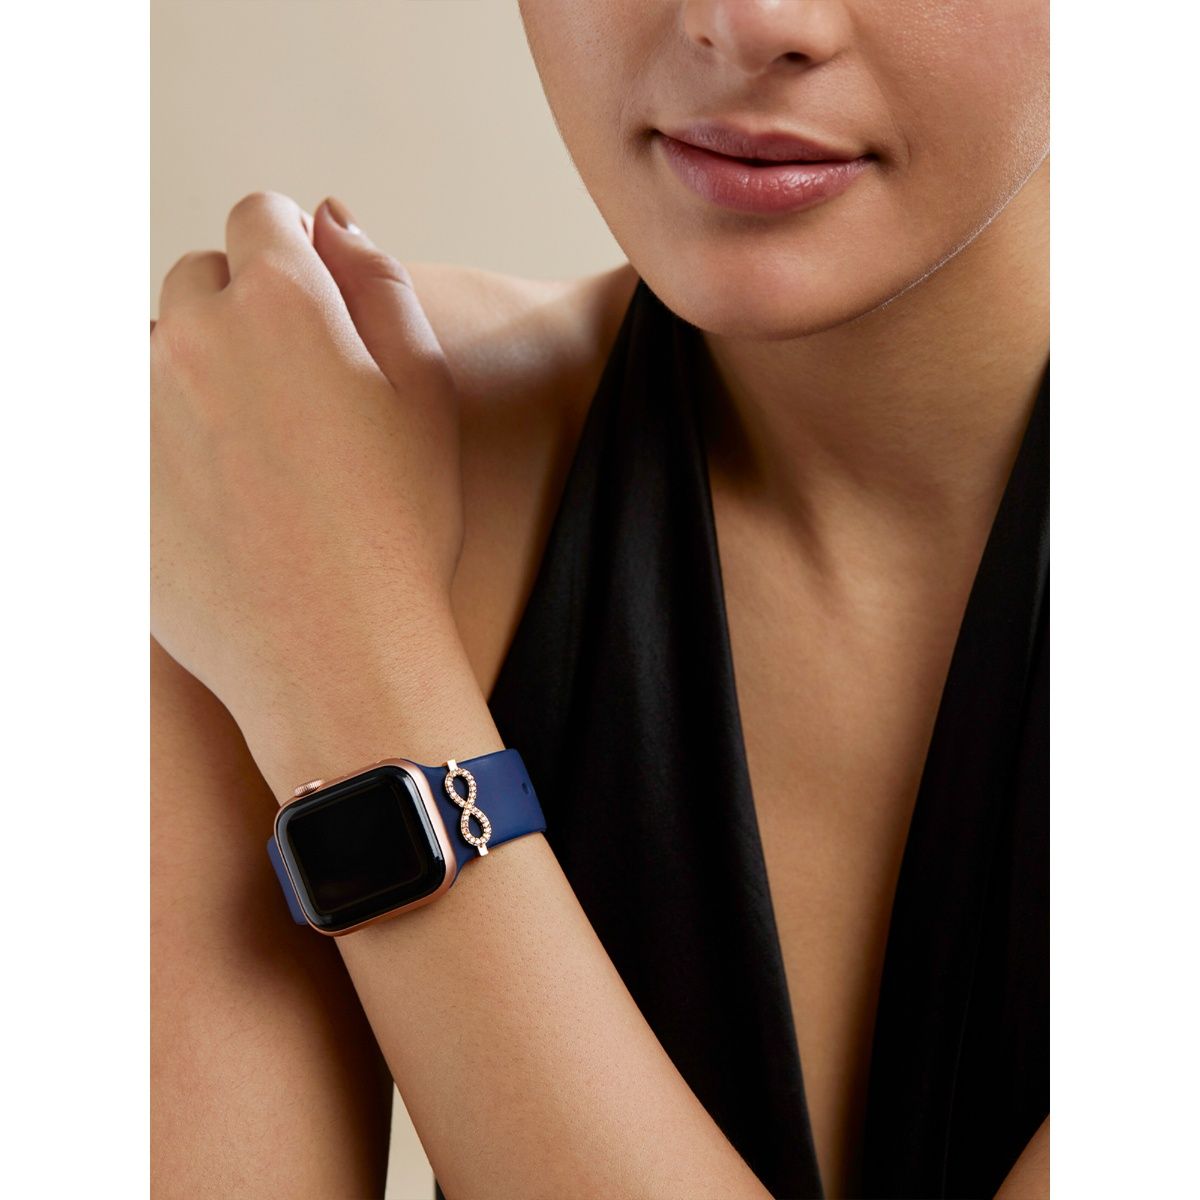 Jewelry  Apple Watch Charm Bracelet  Poshmark